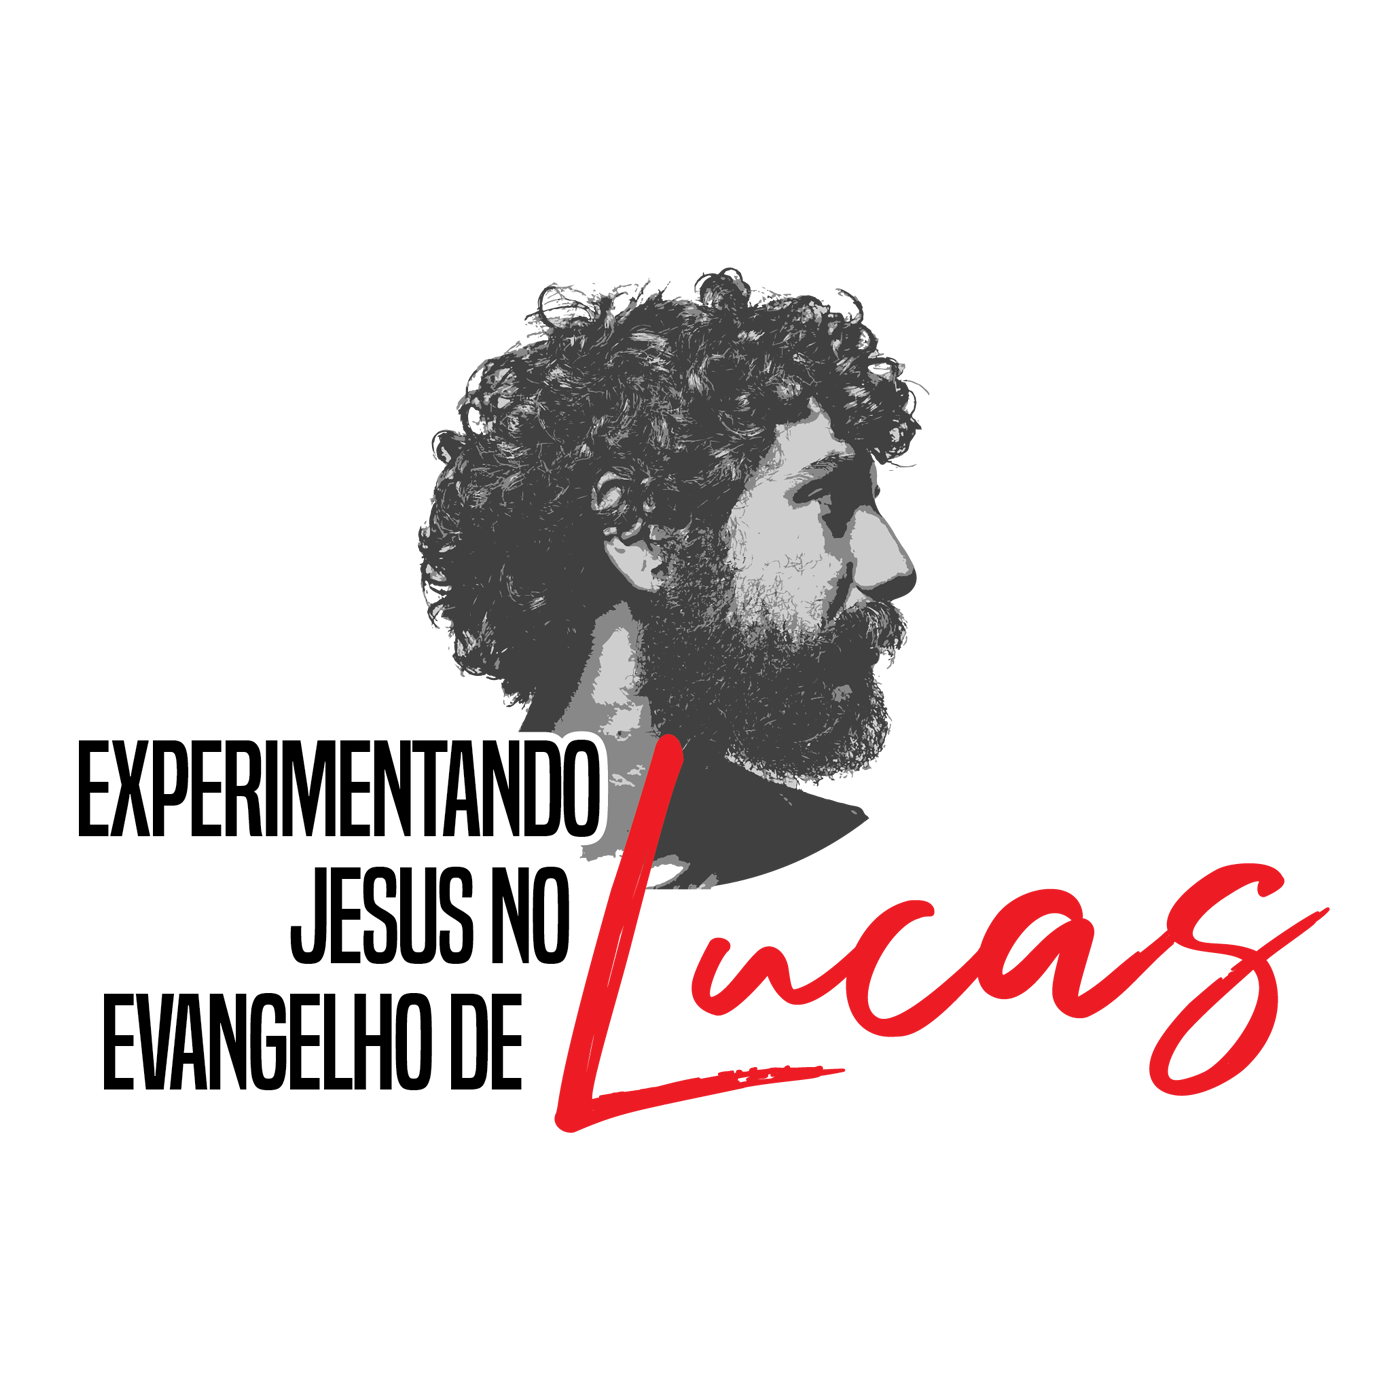 Lucas 6:21b